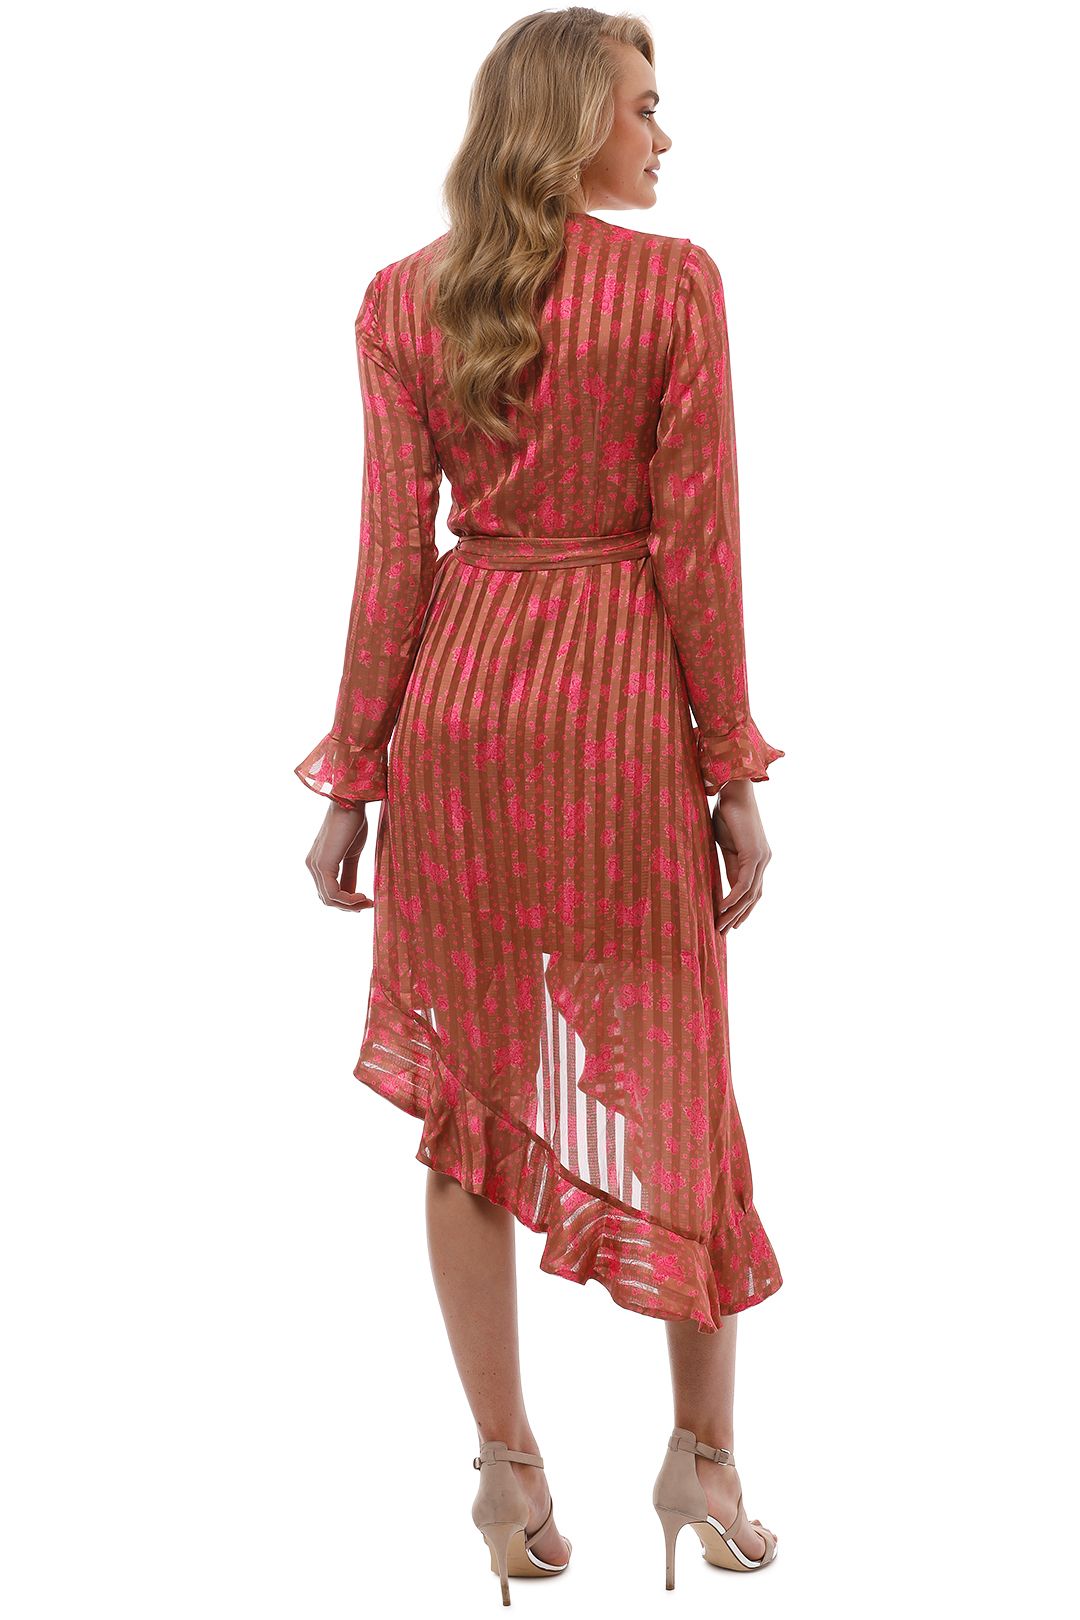 CMEO Collective - Significant Midi Dress - Copper Rose - Back